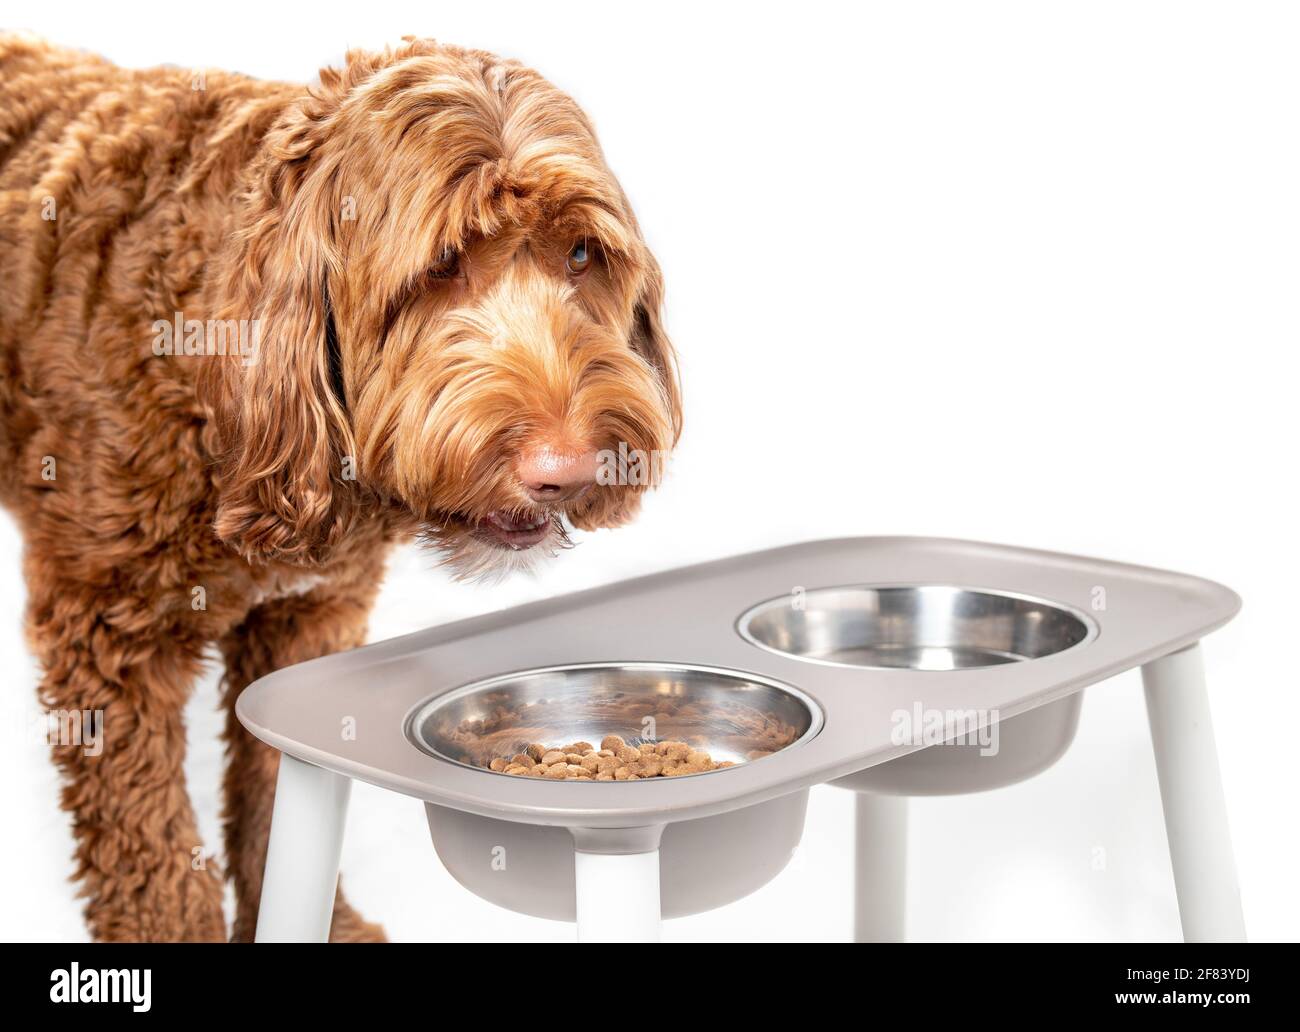 Labradoodle-Hund, der von einer Futterstation isst. Große orange flauschige Hündin mit Kopf über Futterschale gefüllt mit Kibbles. Der Mund ist beim Kauen geöffnet Stockfoto